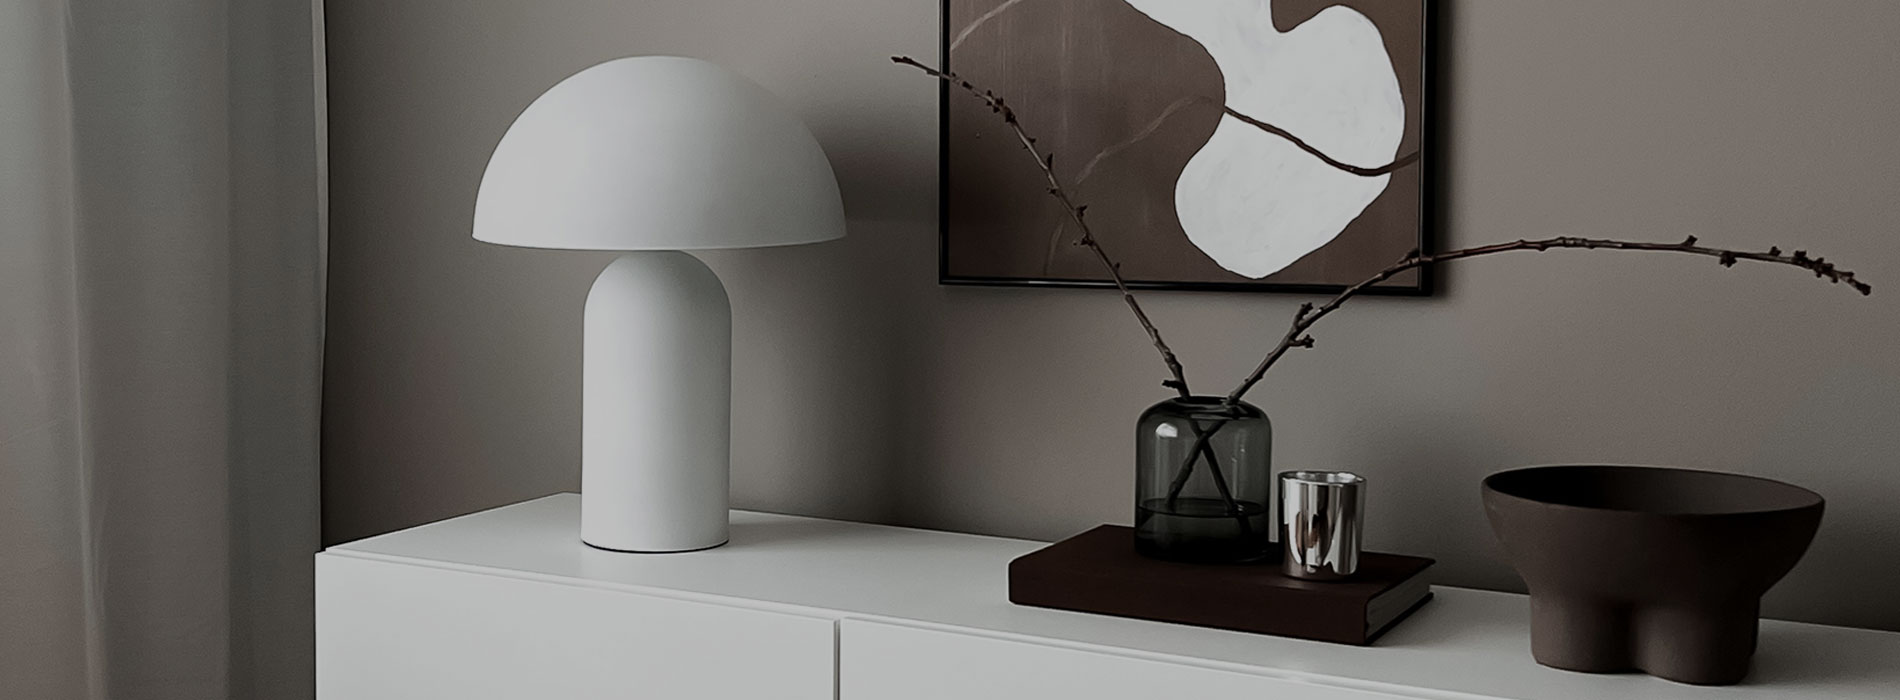 Designlampor online - Lampor och belysning från kända varumärken perfekt för det skandinaviska hemmet